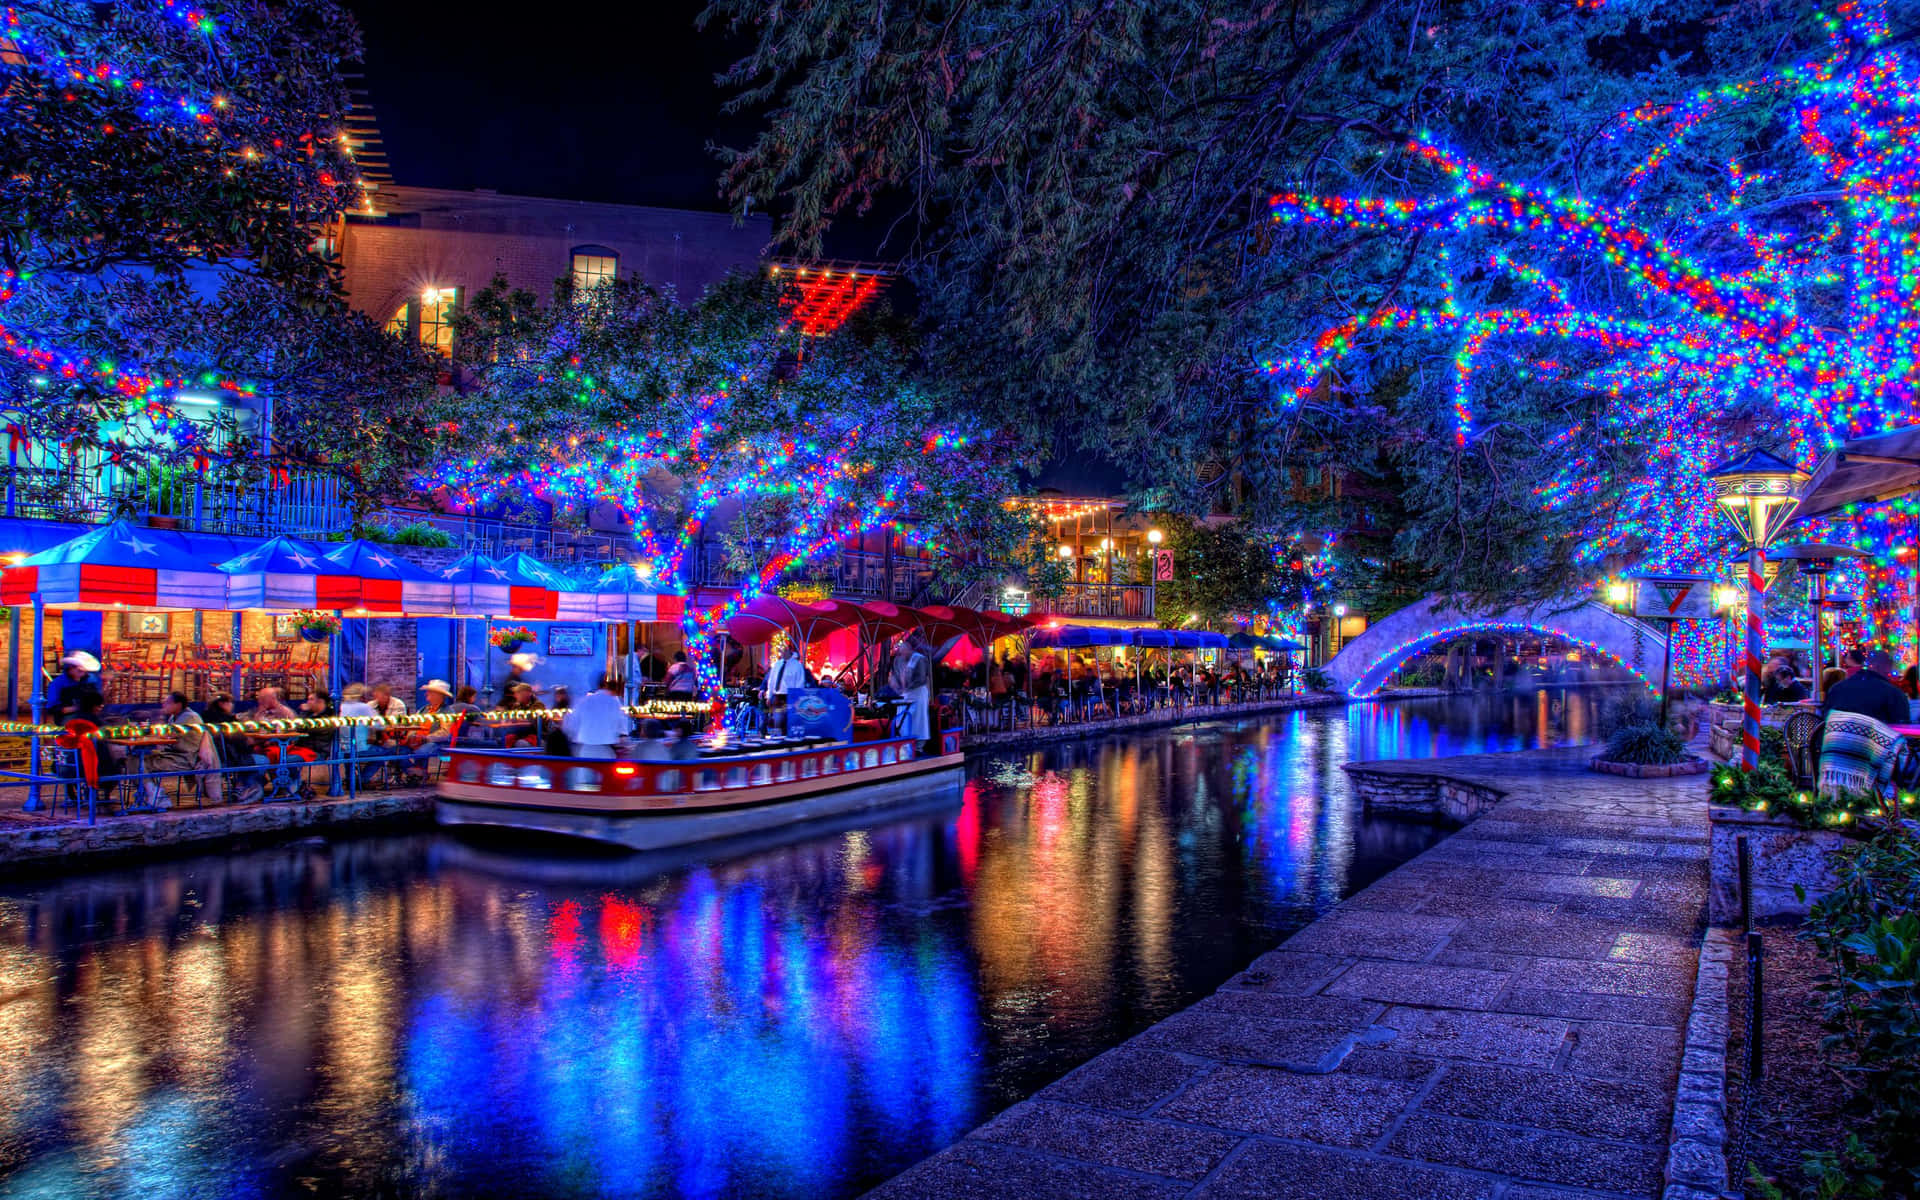 Imagende Un Canal De Luces De Navidad Con Un Barco Por La Noche